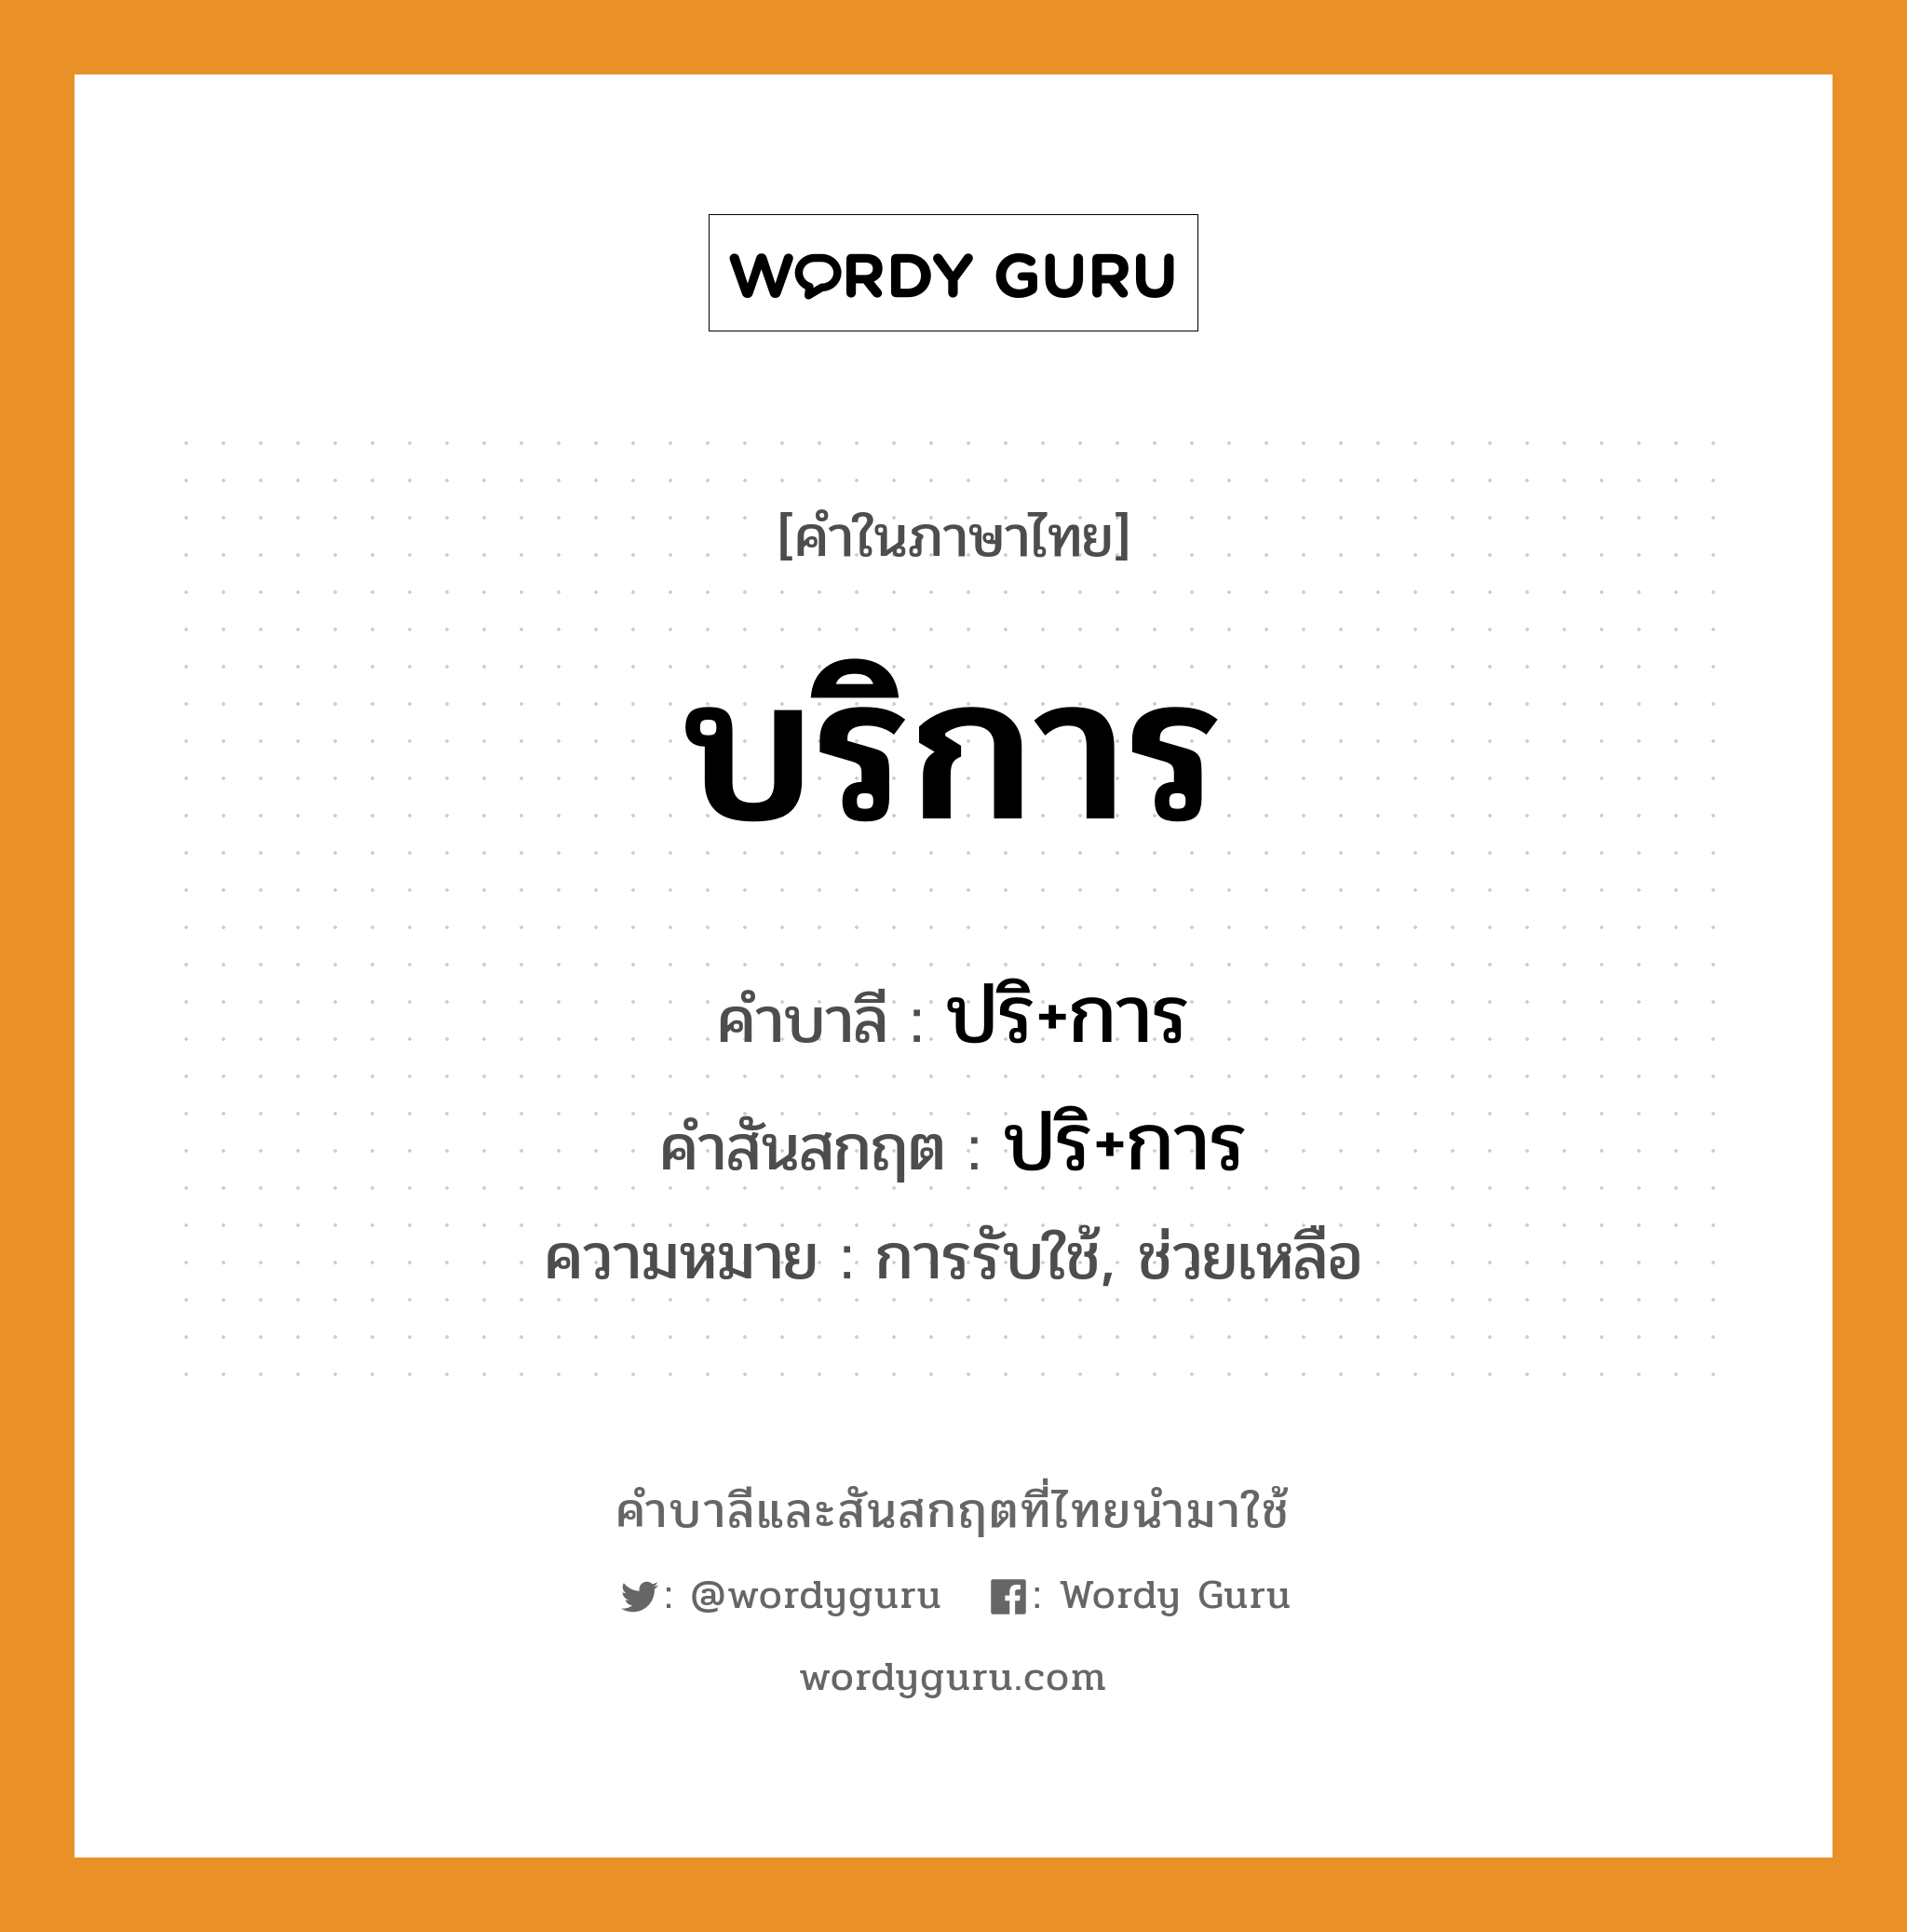 บริการ บาลี สันสกฤต?, คำบาลีและสันสกฤต บริการ คำในภาษาไทย บริการ คำบาลี ปริ+การ คำสันสกฤต ปริ+การ ความหมาย การรับใช้, ช่วยเหลือ